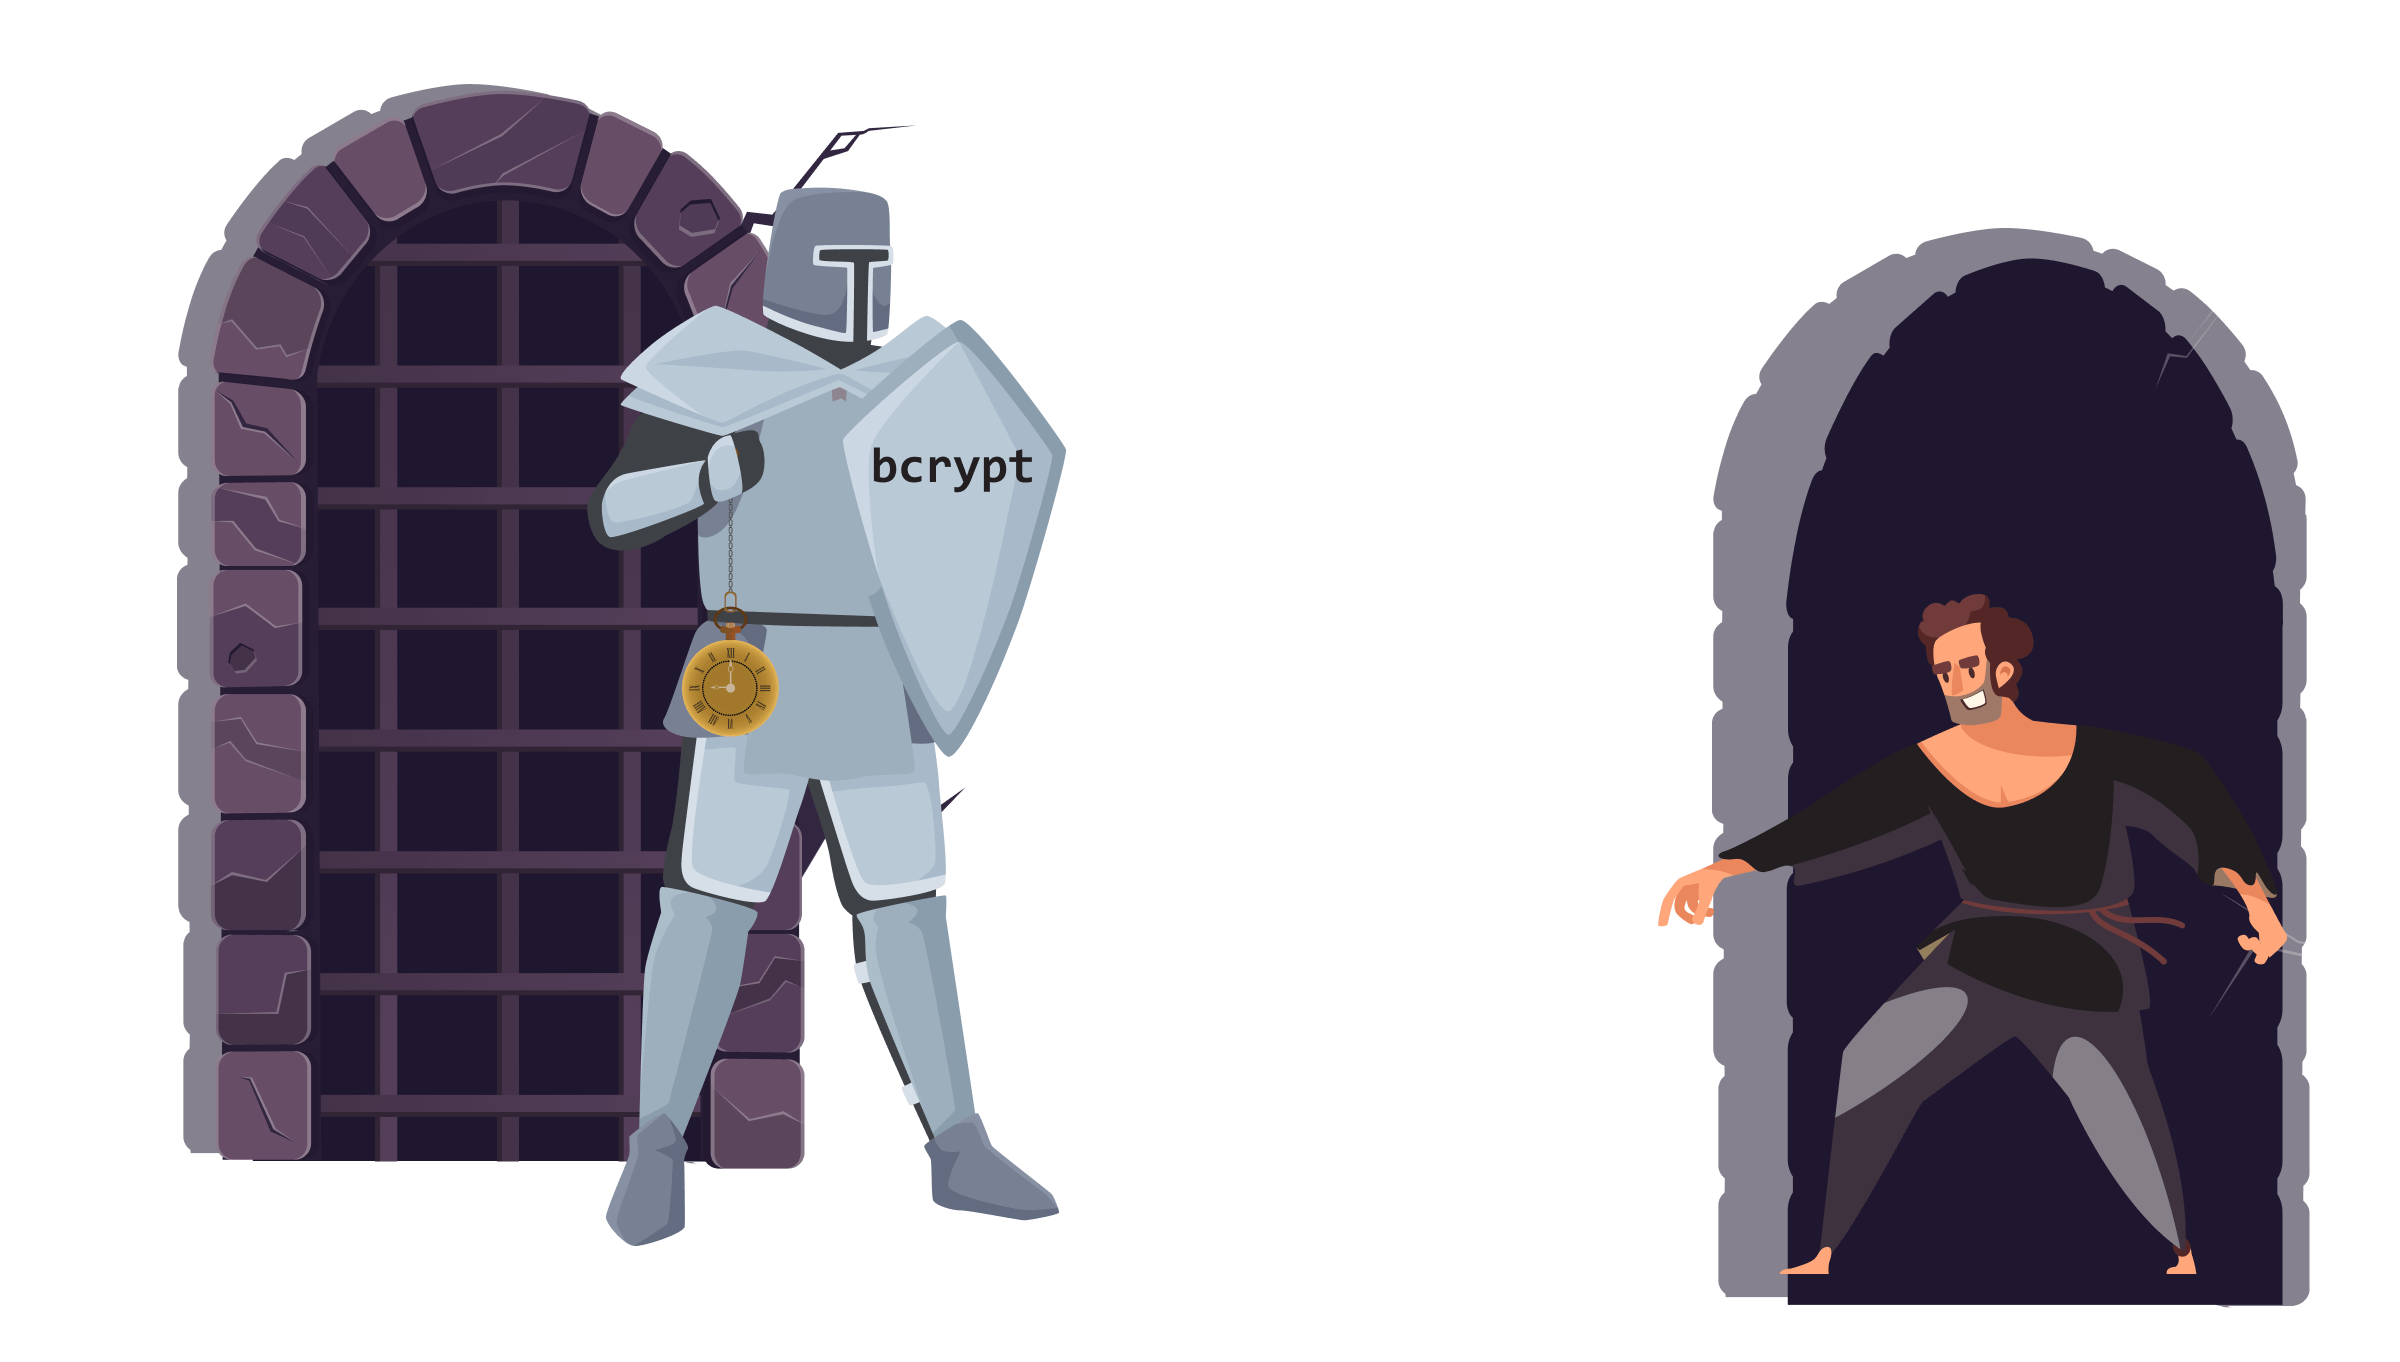 bcrypt vs attacker